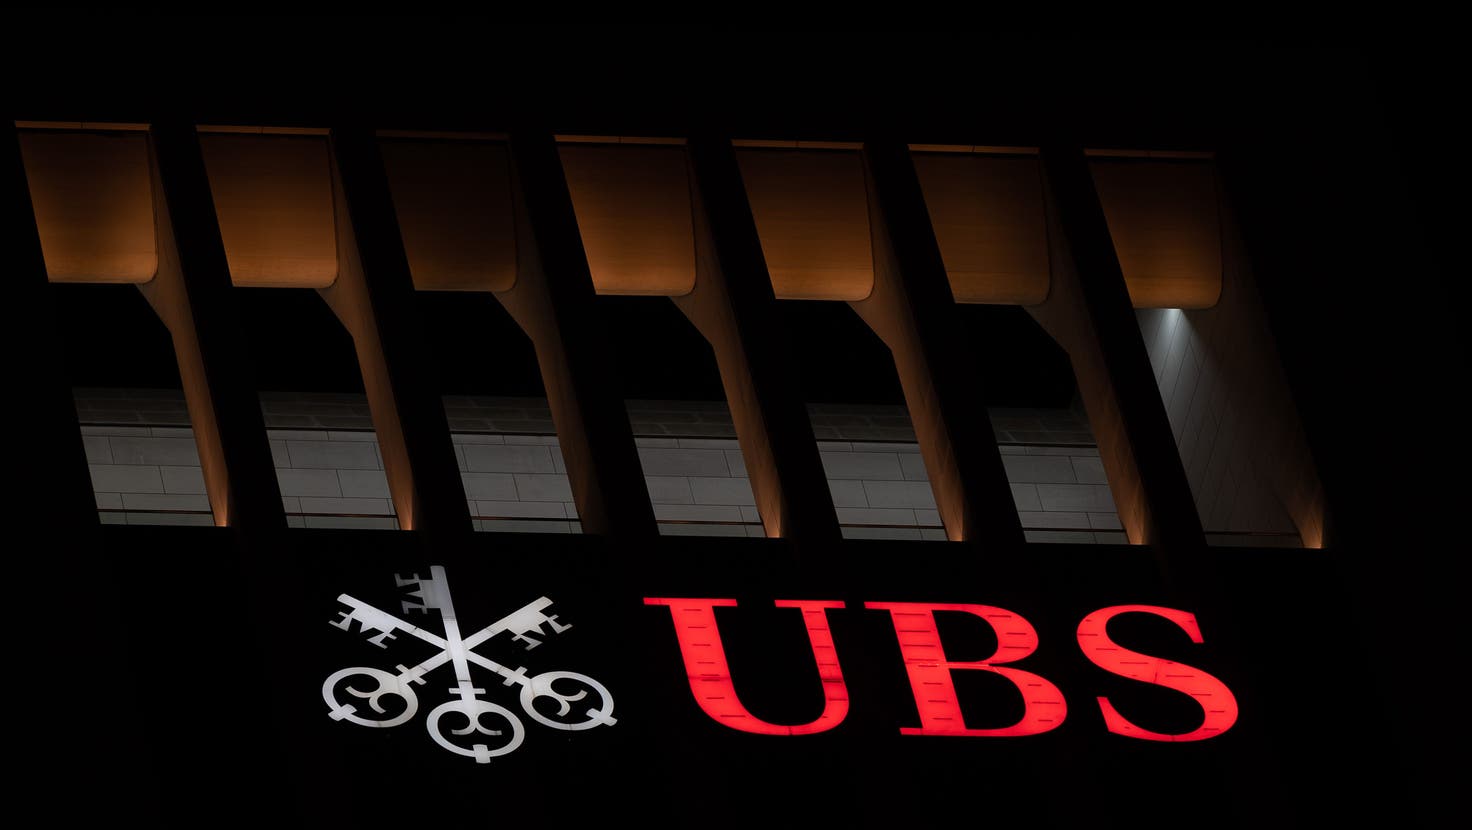 Die UBS stösst beim Aufräumen der dunklen CS-Vergangenheit immer wieder auf unliebsame Überraschungen. (Bild: Sebastian Gollnow / DPA)